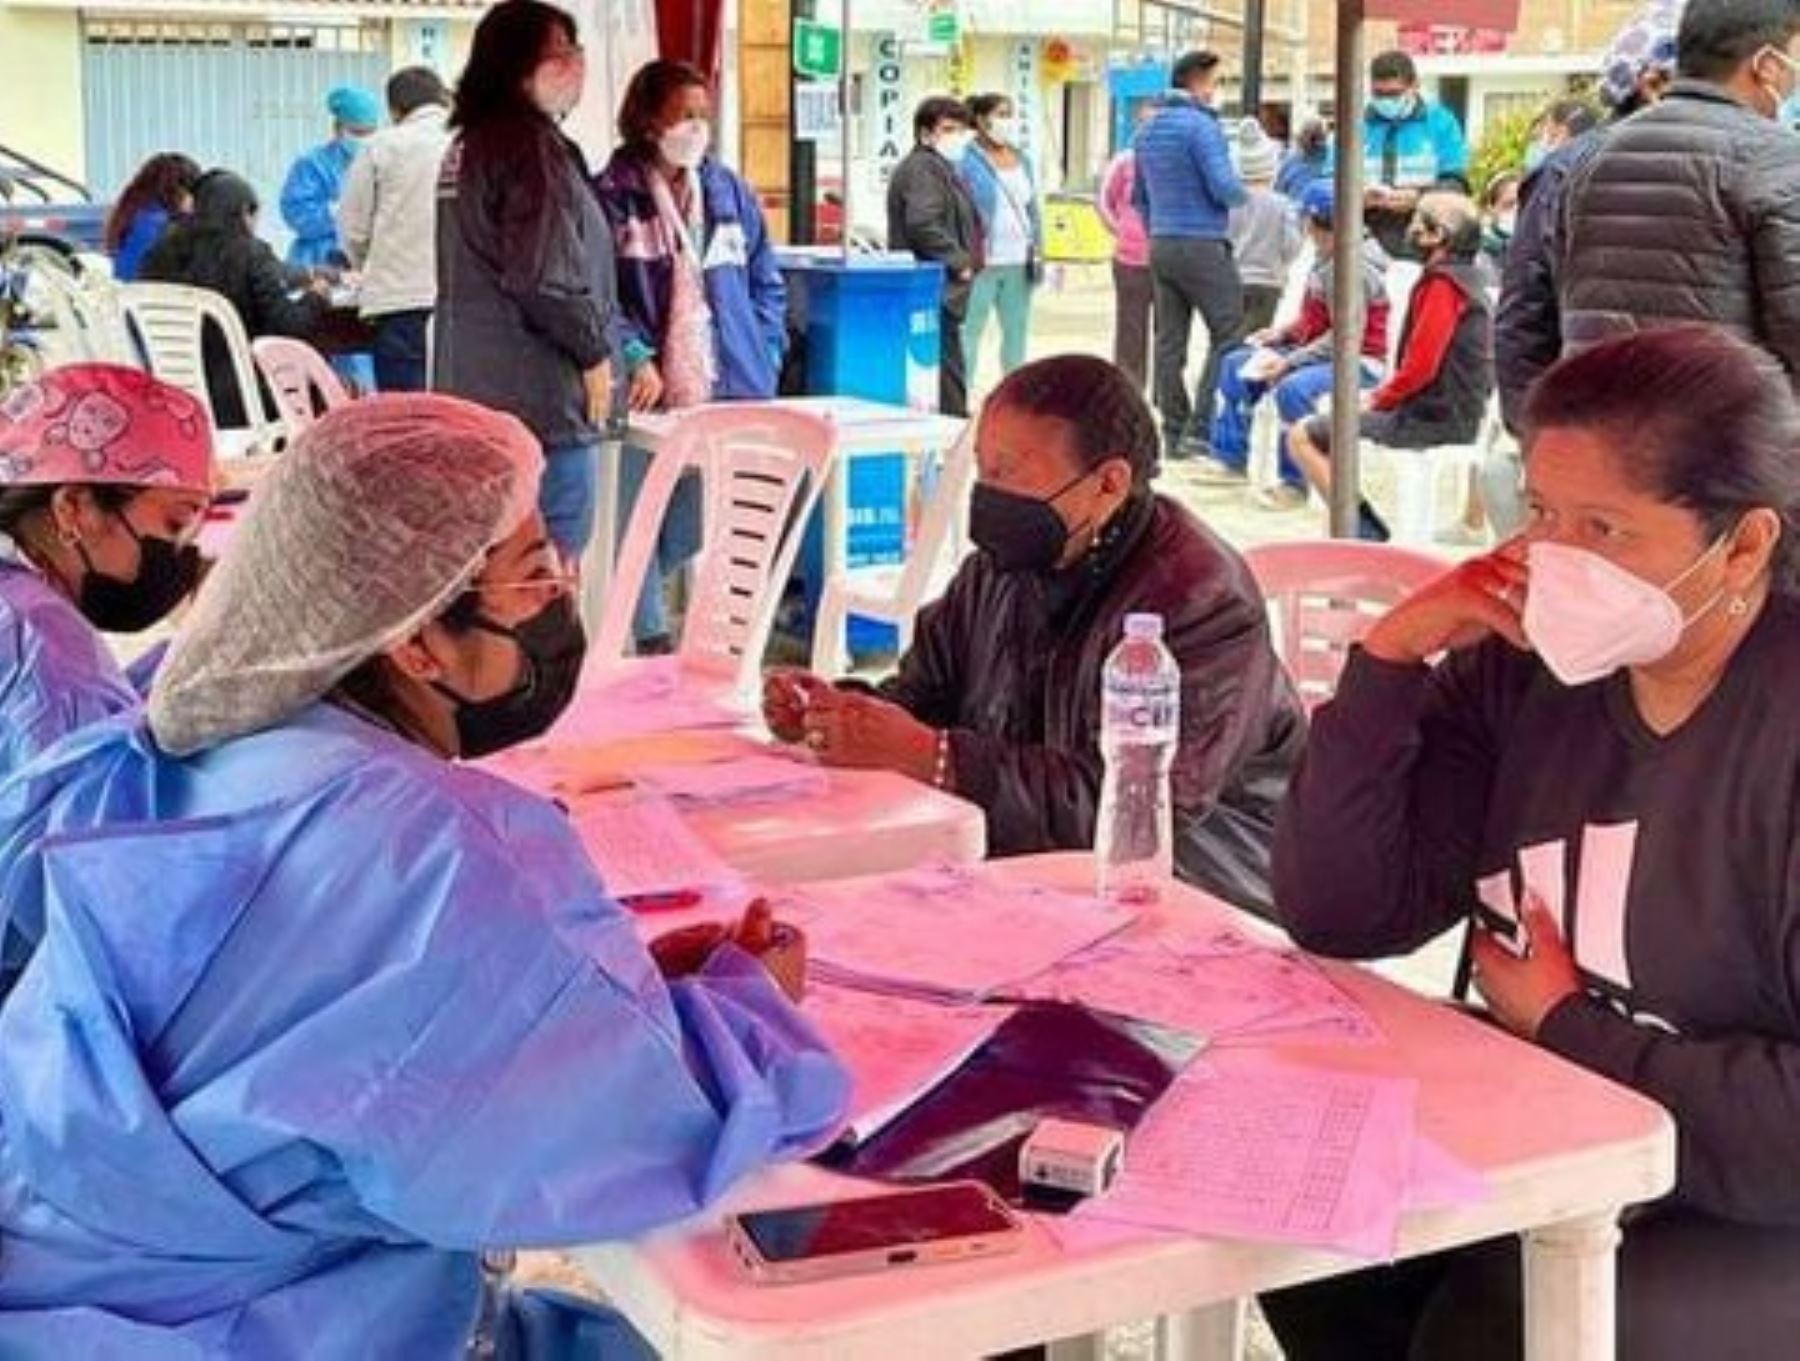 El Ministerio de Salud realizará mañana una campaña integral de salud en el distrito de Huaros, provincia de Canta, dirigida a la población afectada por el derrame de concentrado de zinc en el río Chillón. Foto: ANDINA/difusión.